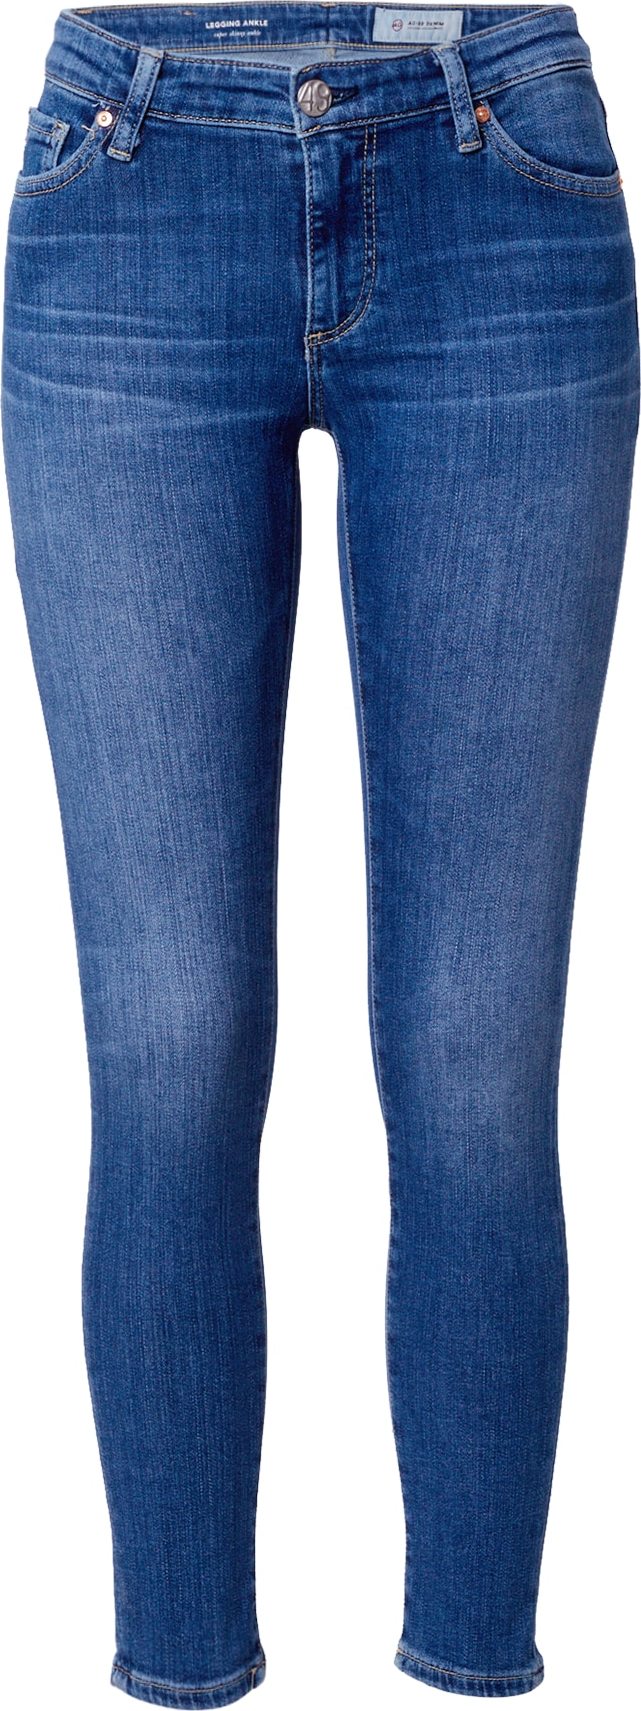 Džíny 'Legging Ankle' ag jeans modrá džínovina